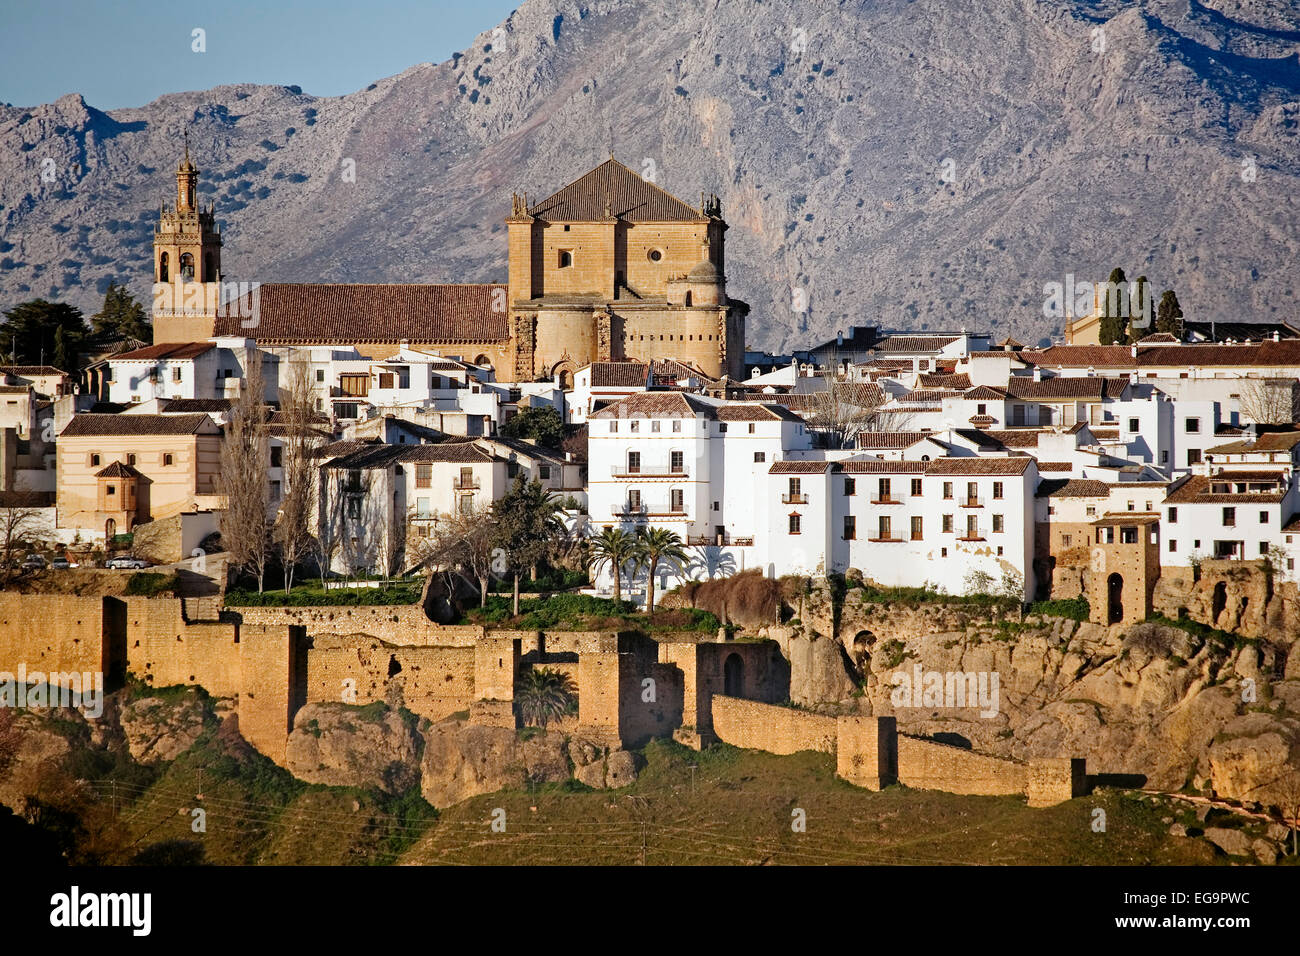 Arabische Wände Ronda Dorf Malaga Andalusien Spanien Vista de Las Murallas  y el Pueblo de Ronda Malaga Andalusien España Stockfotografie - Alamy